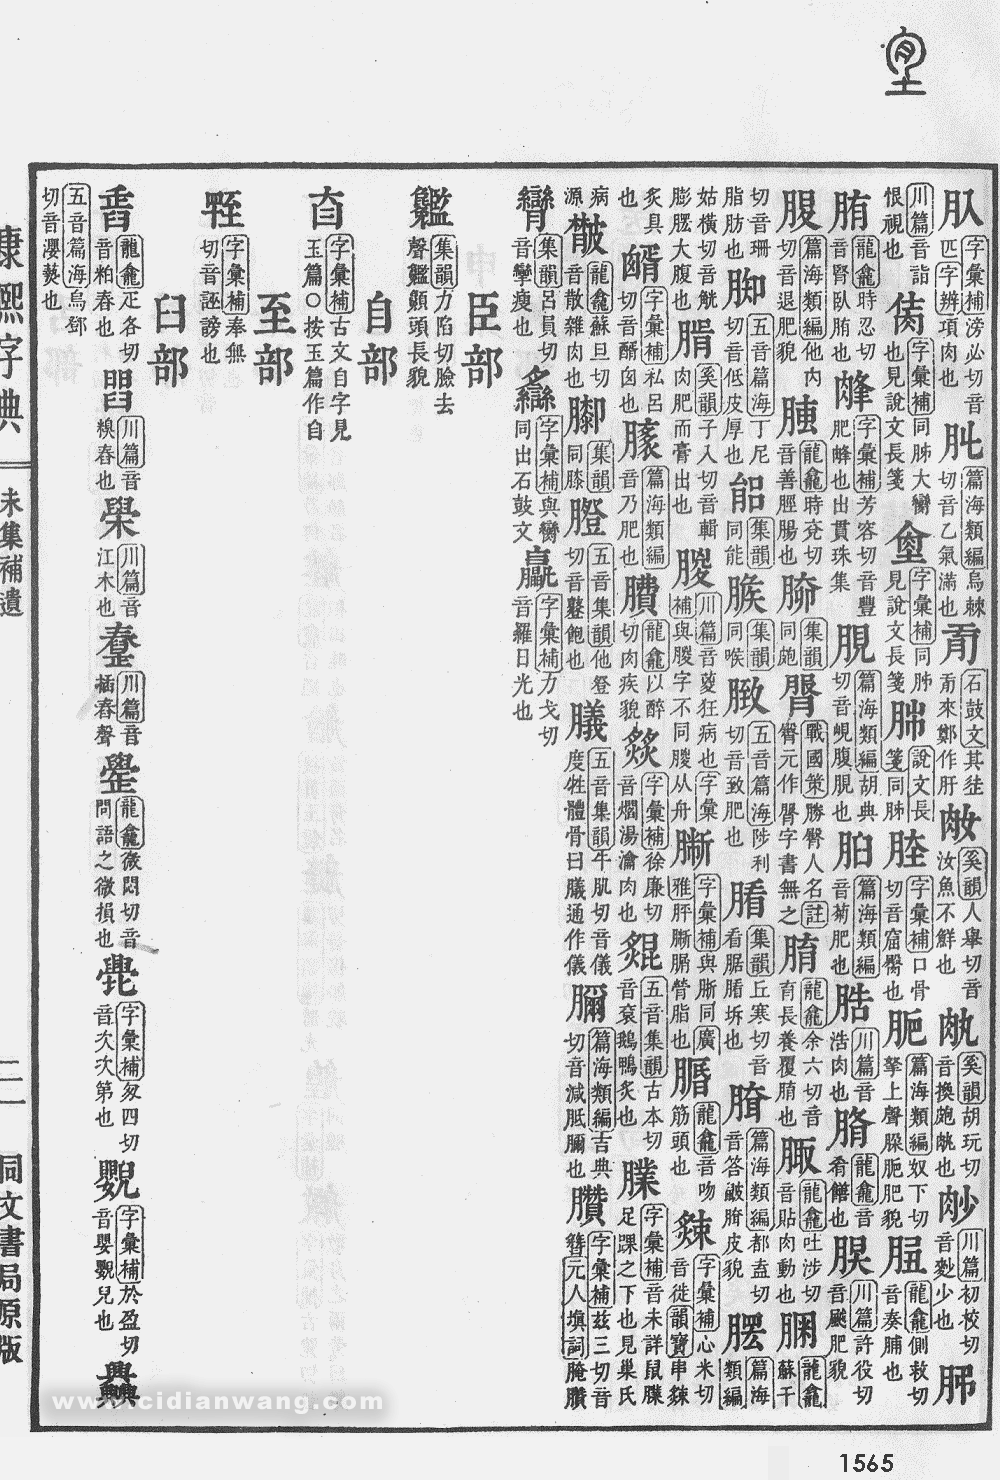 康熙字典掃描版第1565頁